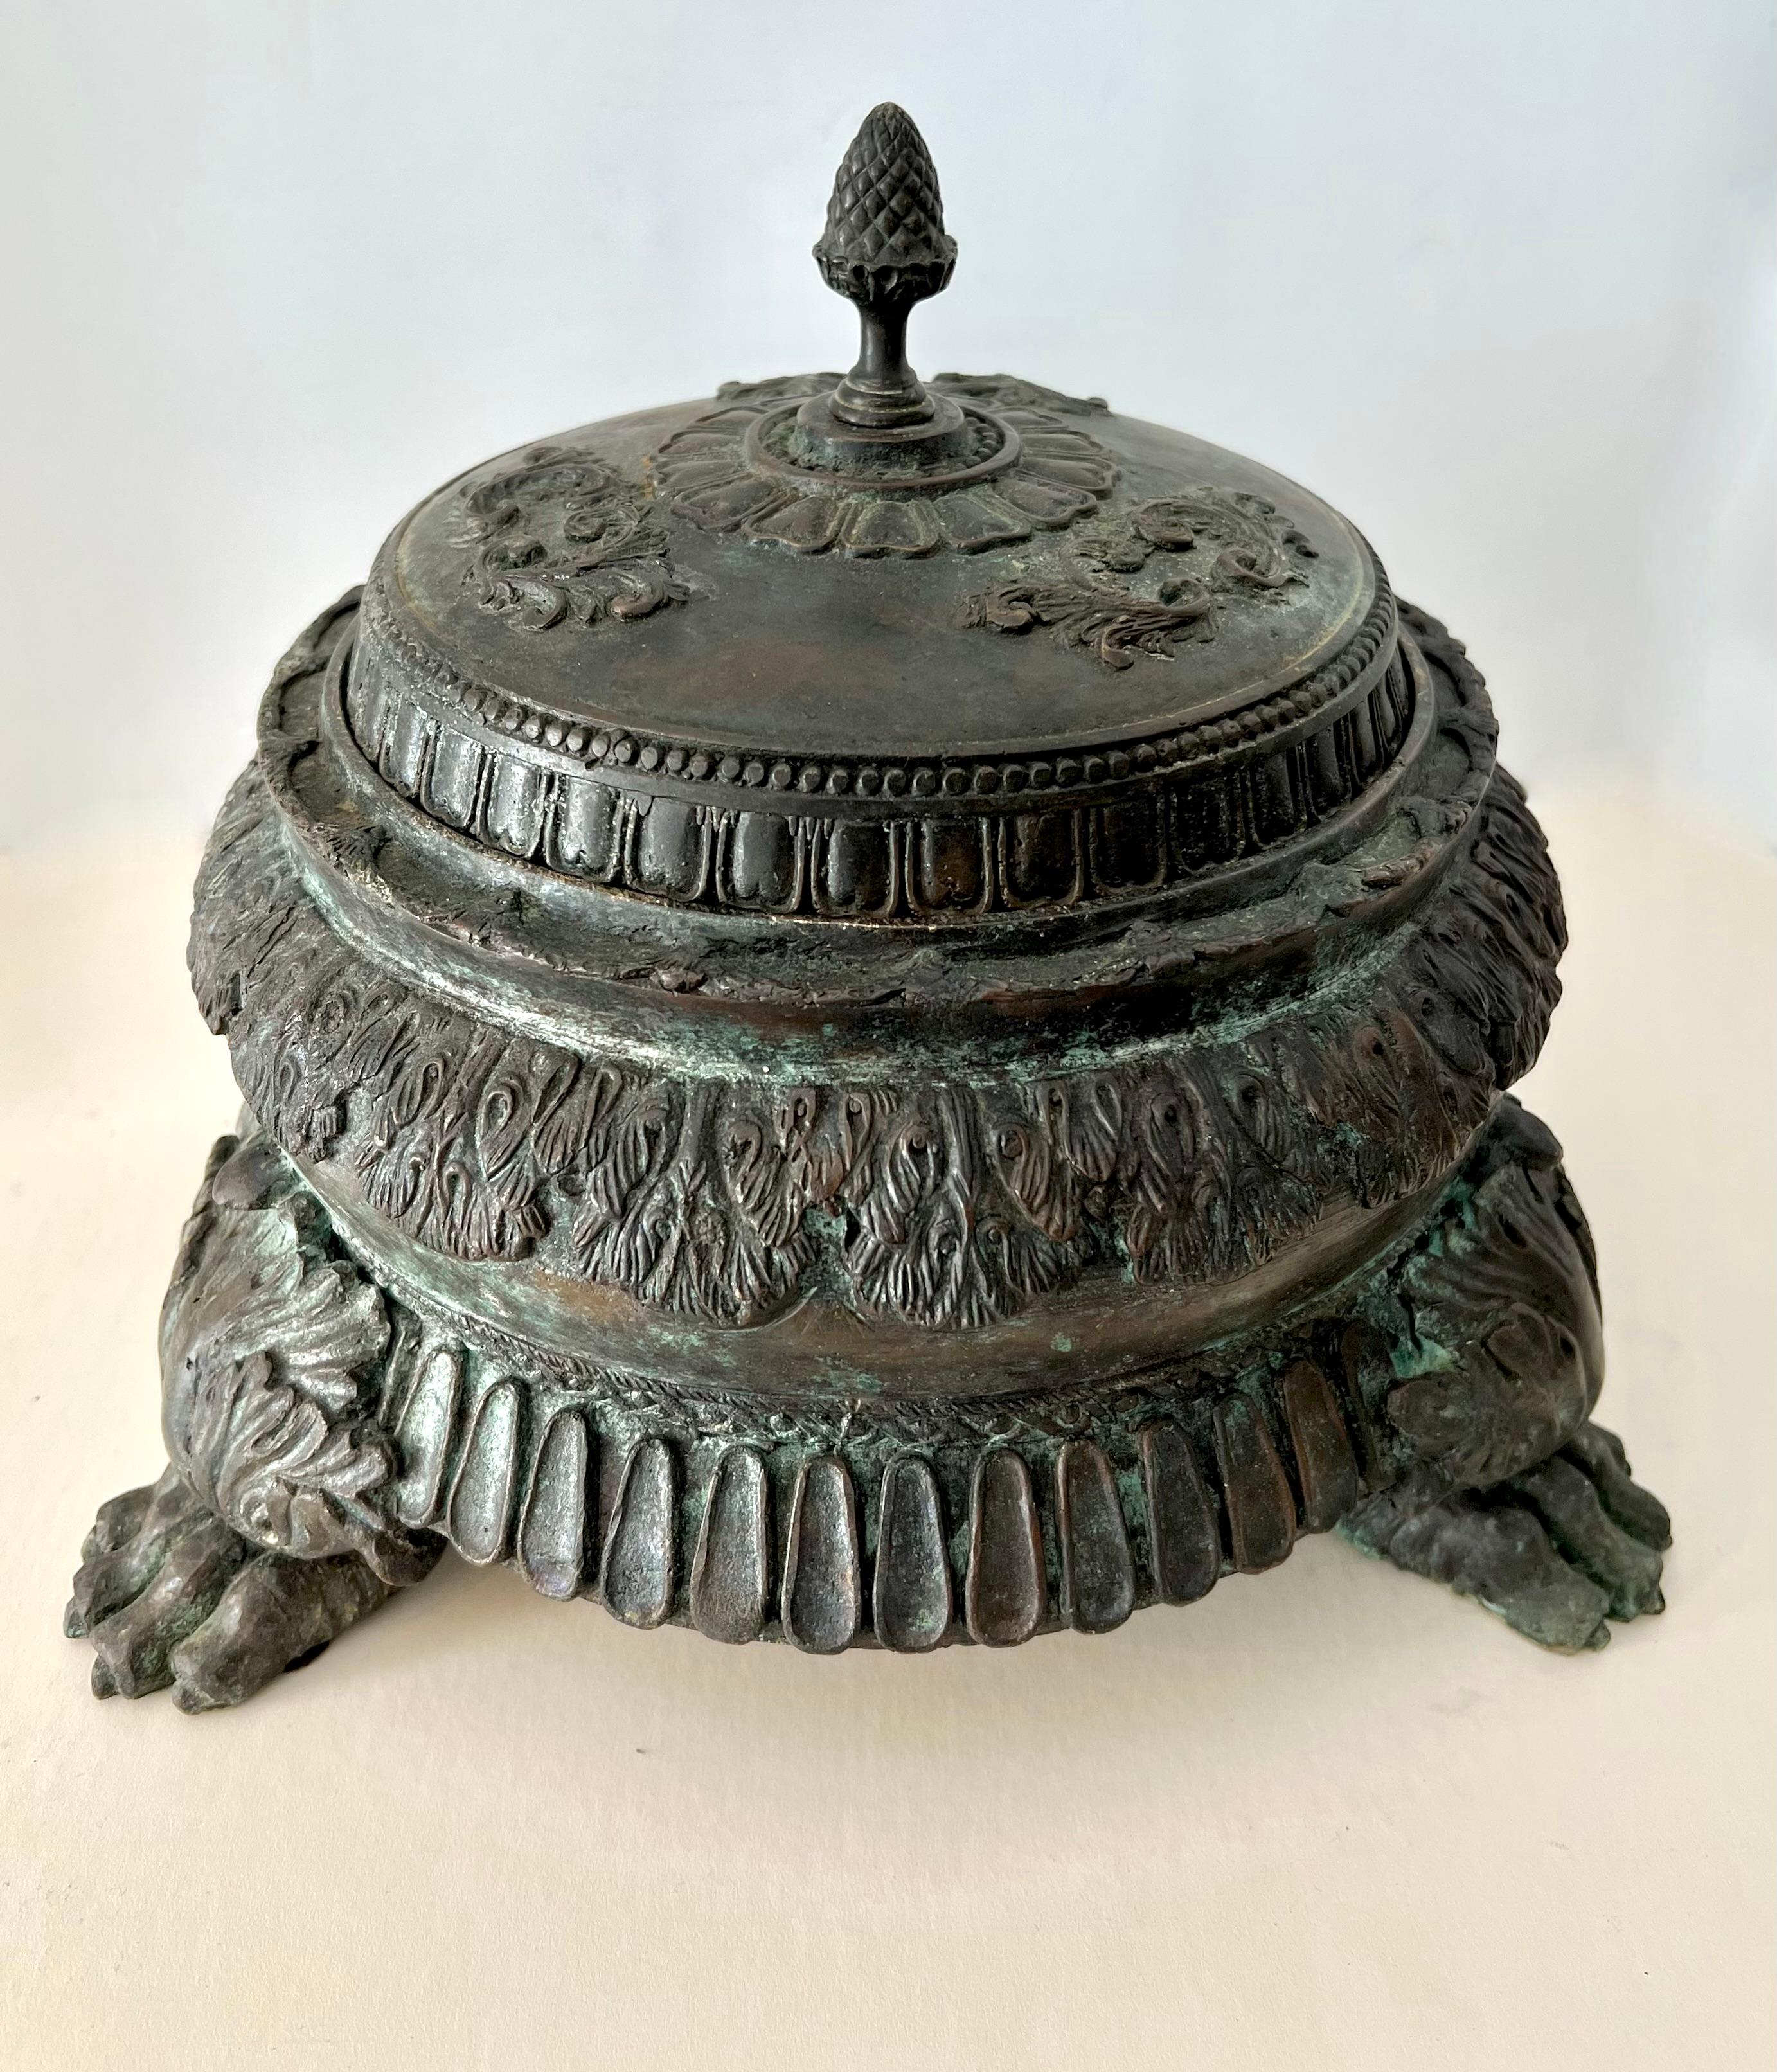 Censeur chinois en bronze datant probablement des années 1800. La pièce est très substantielle et lourde - le couvercle s'enlève pour révéler une plate-forme en bronze massif pour l'encens. Une pièce magnifique et très décorative.